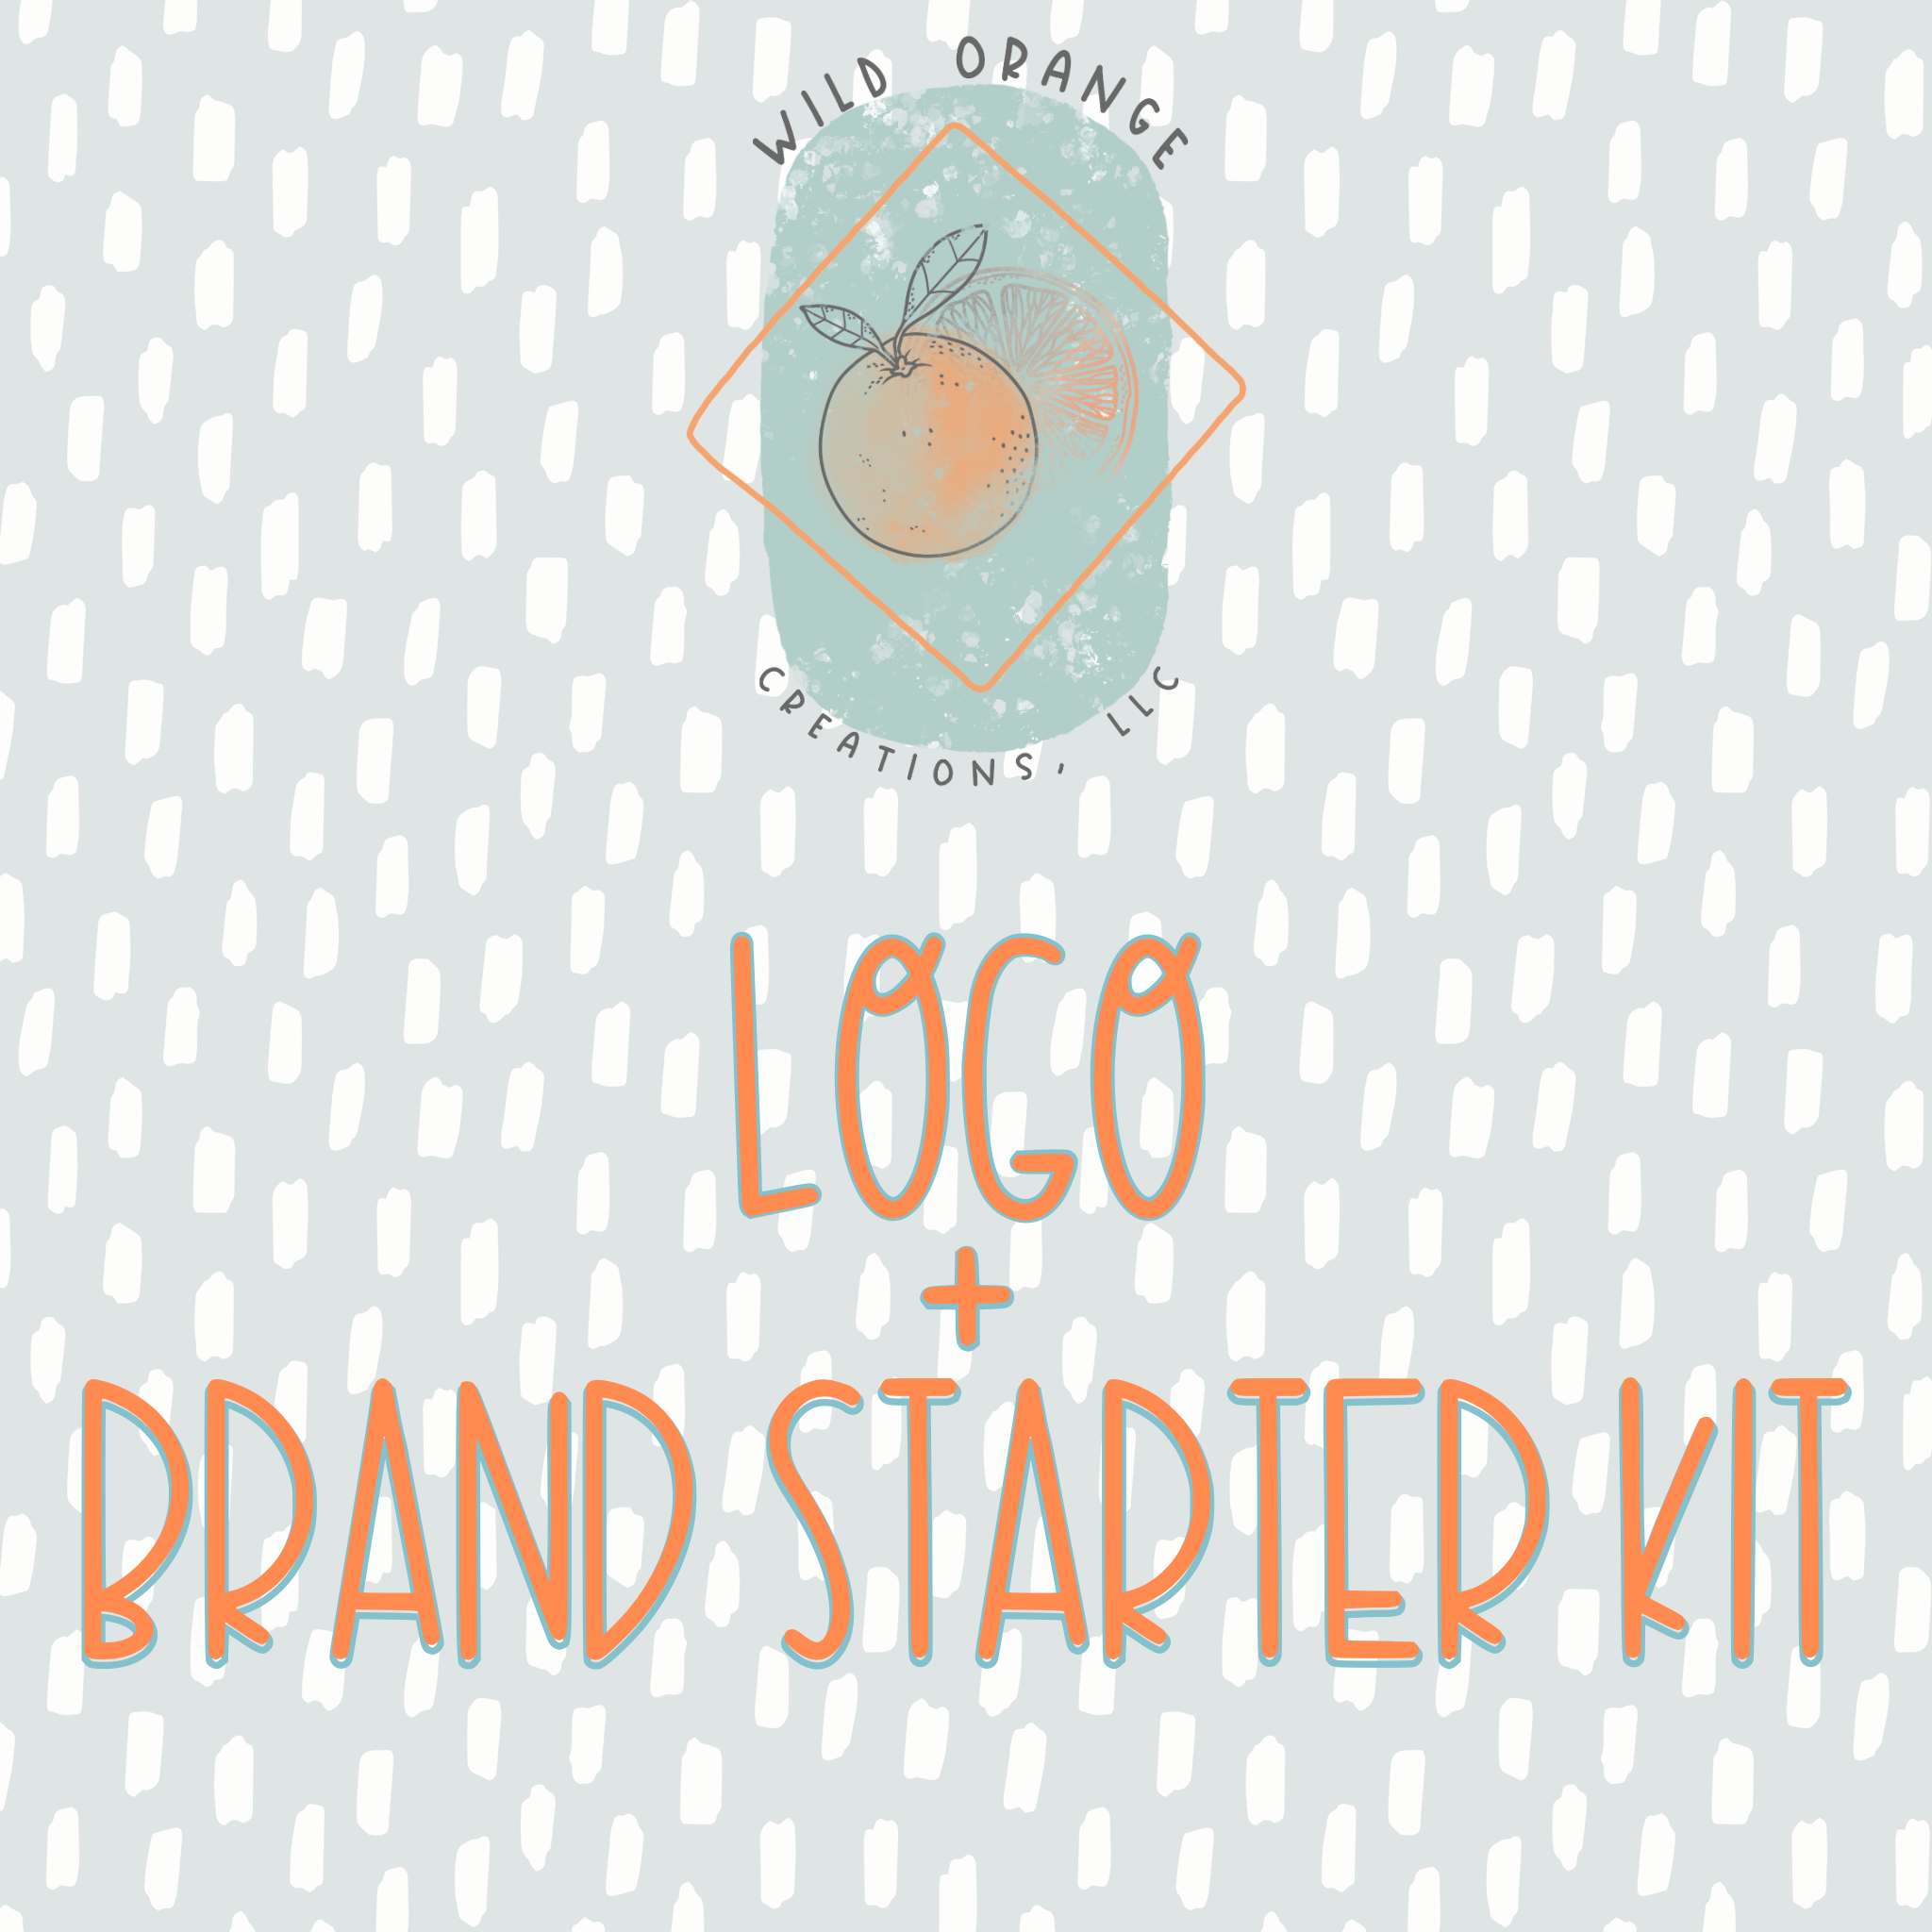 The Logo + Brand Starter Kit